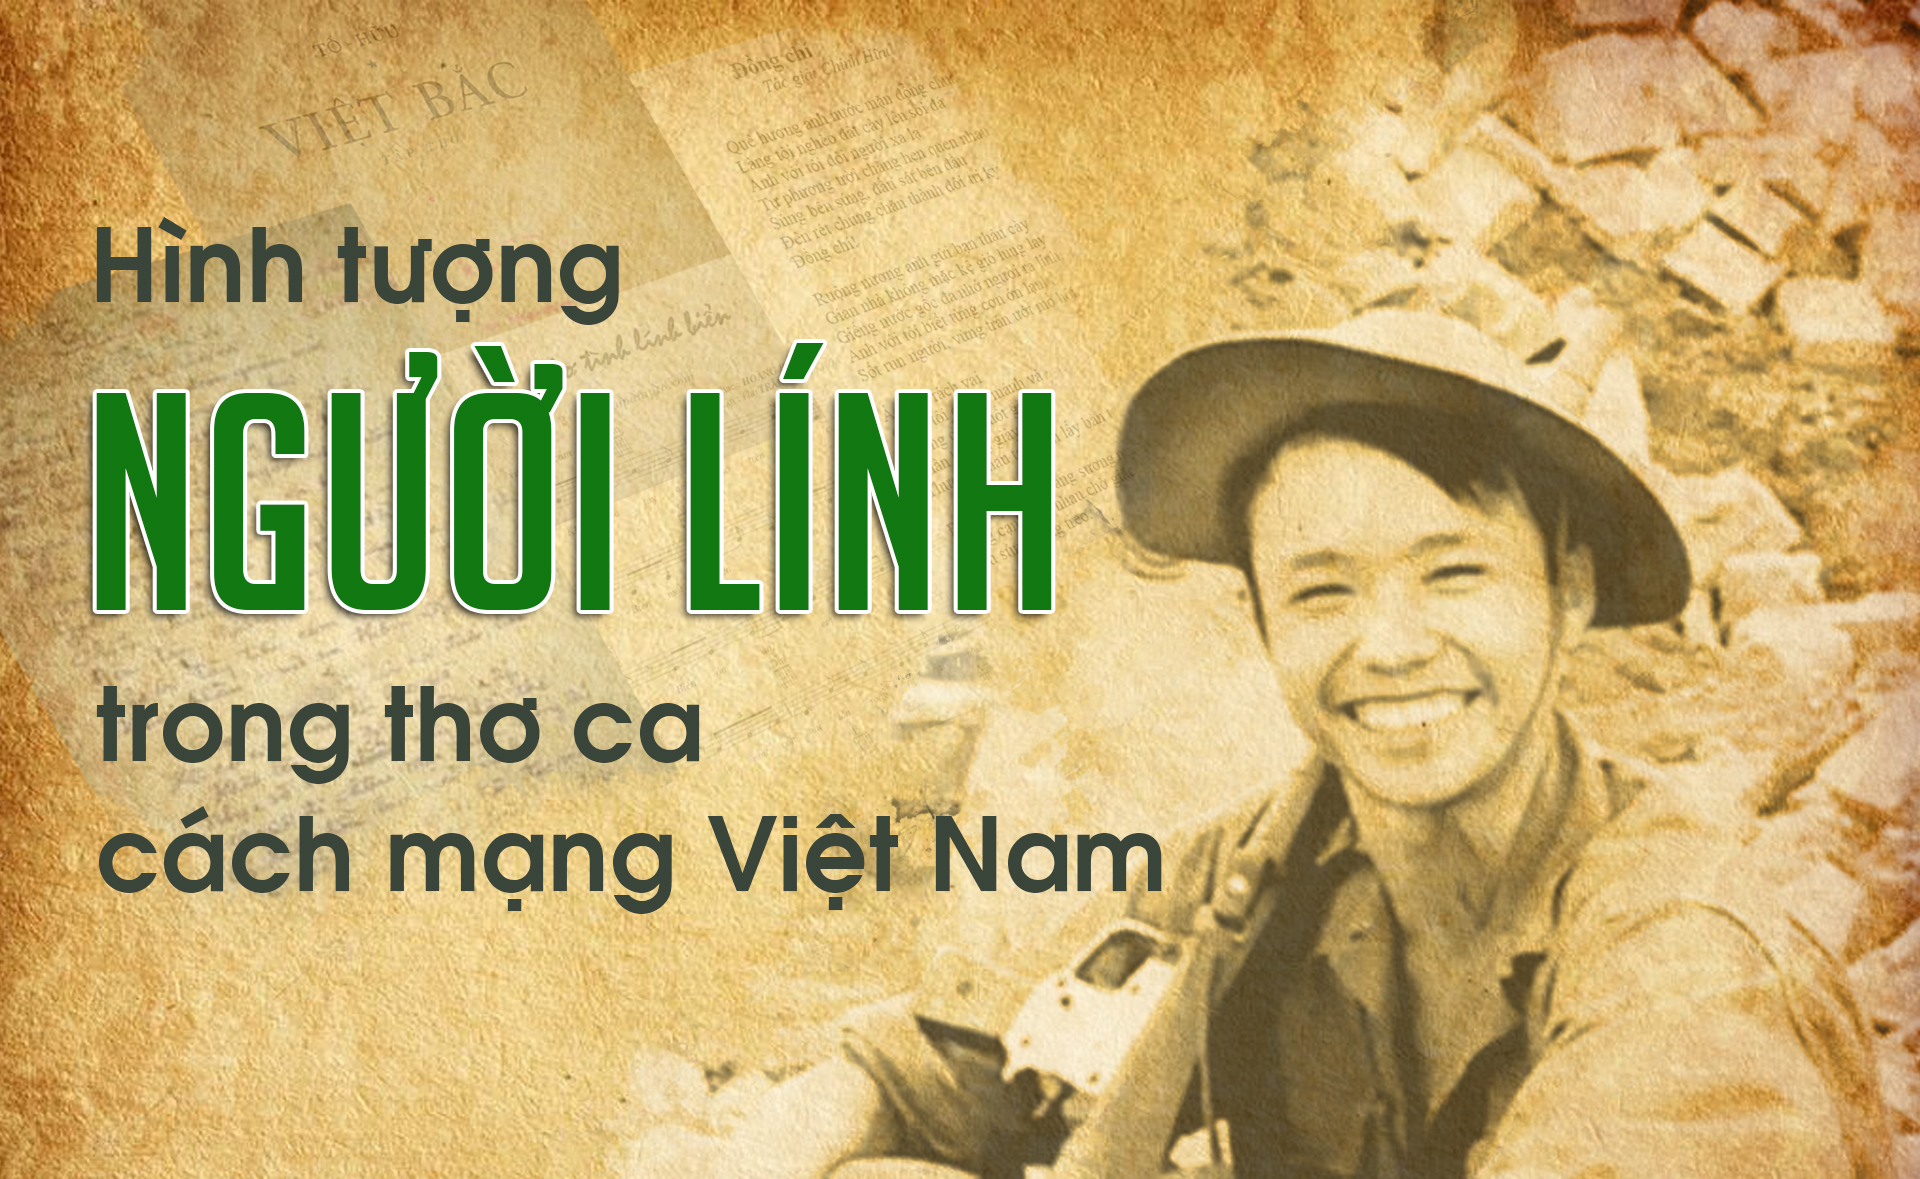 Thơ ca cách mạng được viết ra trong những khoảnh khắc đầy bi kịch, là sự giải thích cho những tâm hồn đang đau khổ và muốn chiến đấu cho đất nước. Nếu bạn muốn thấu hiểu tinh thần của người dân Việt Nam trong những thời kỳ đầy chông gai, hãy xem hình ảnh mãnh liệt và sâu sắc này.